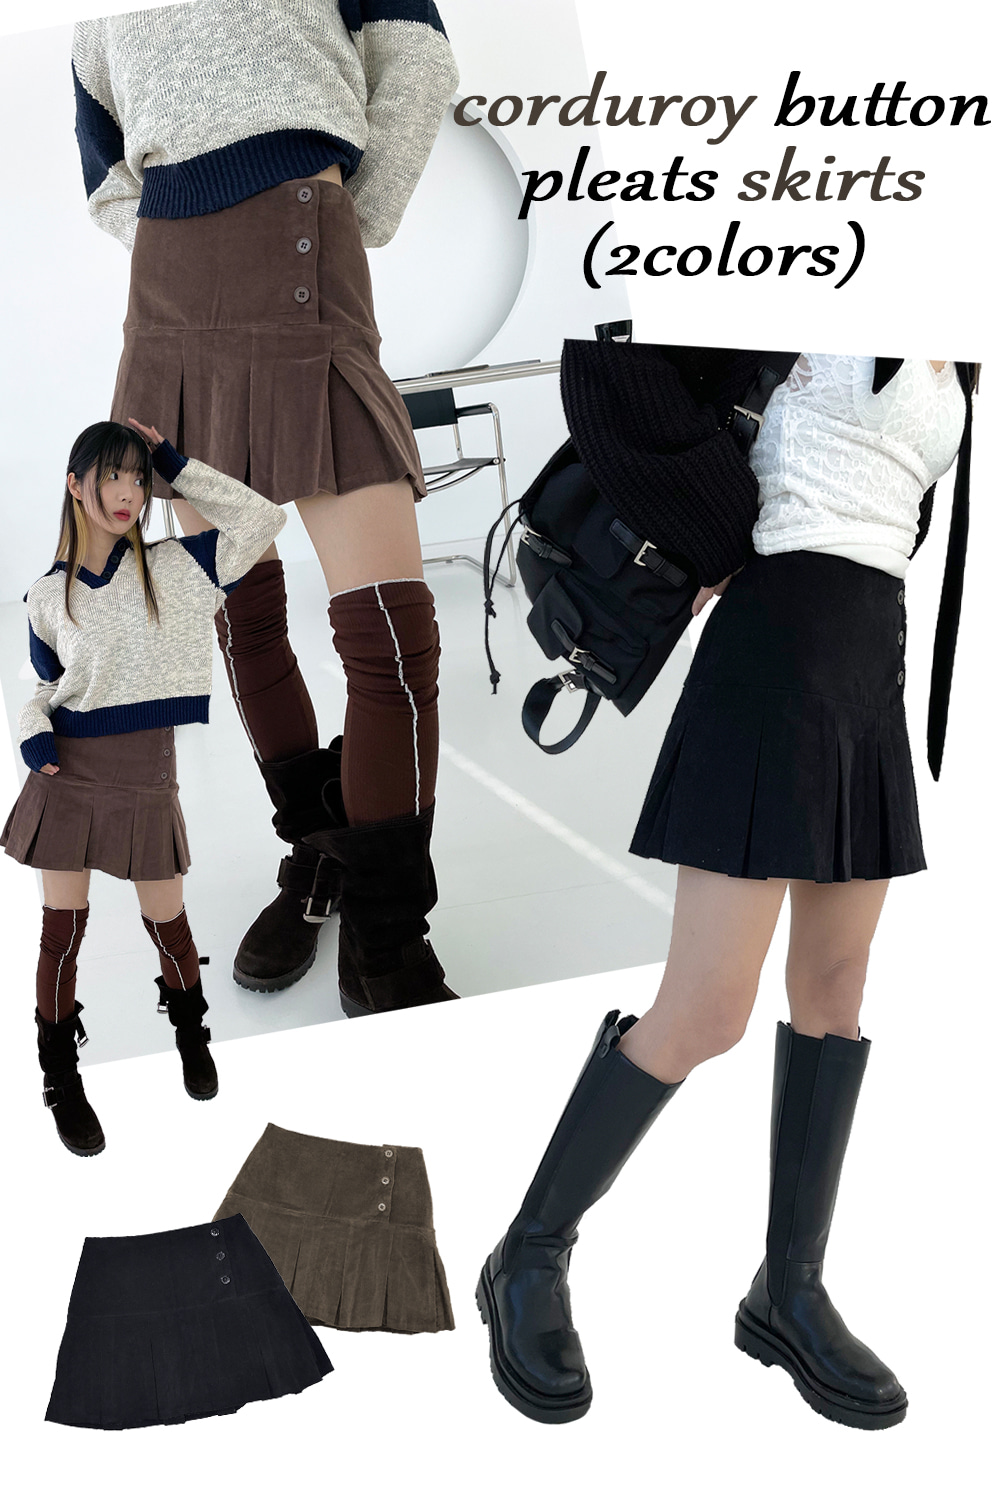 corduroy button pleats skirts (2colors)